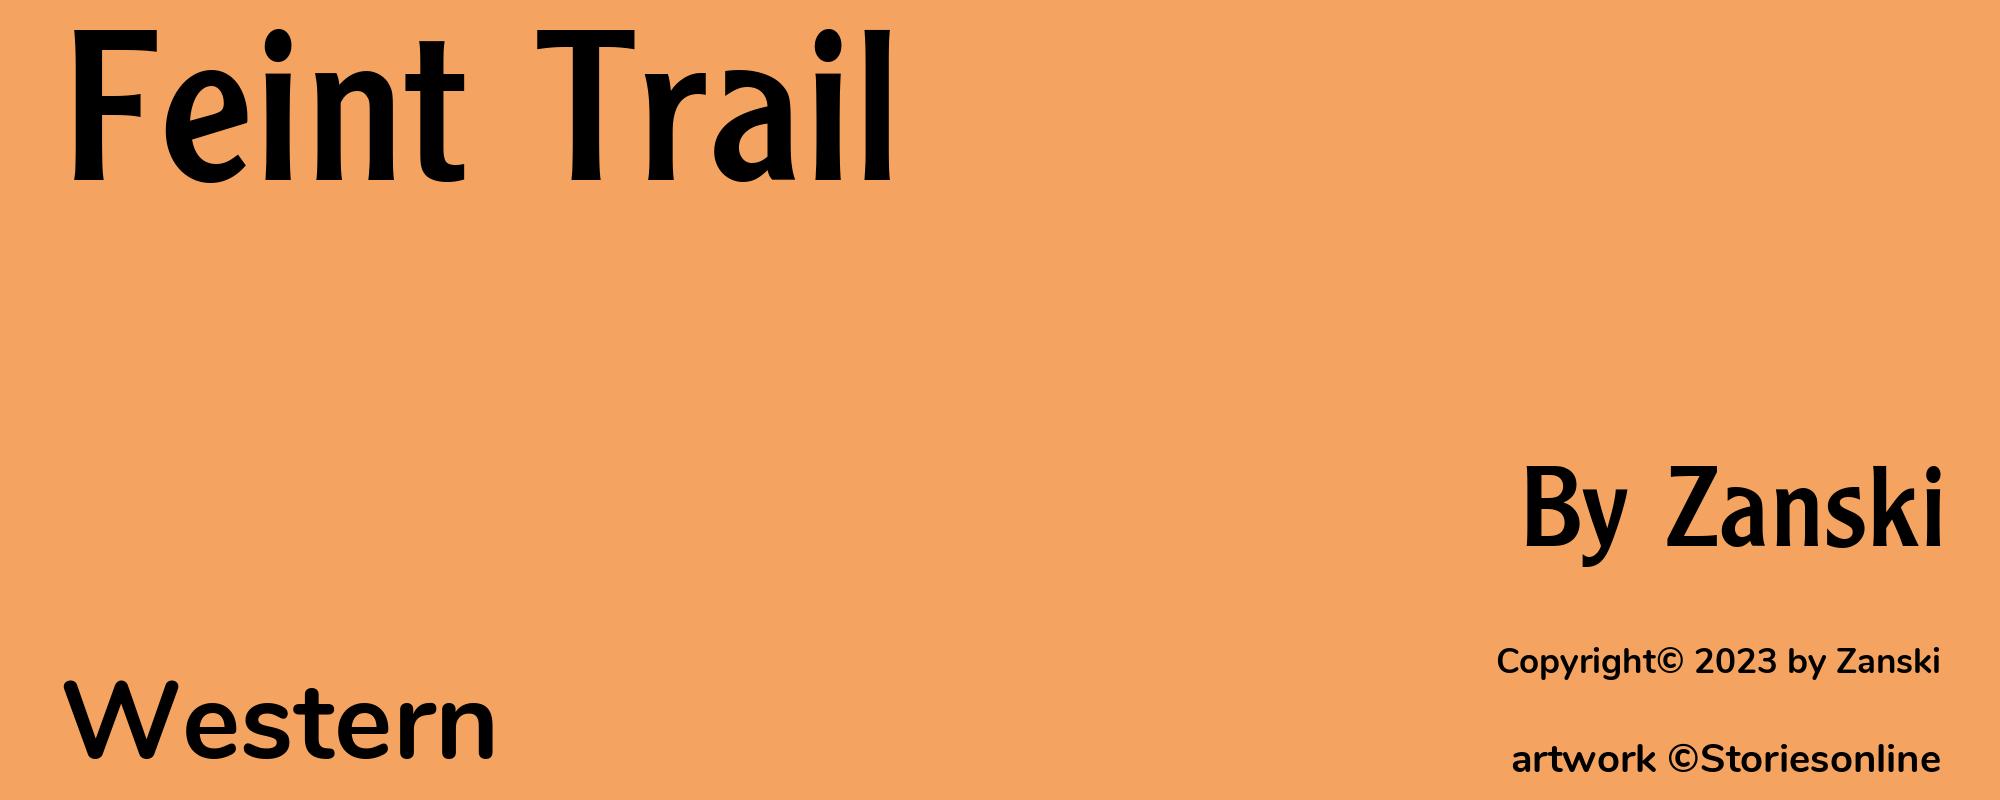 Feint Trail - Cover